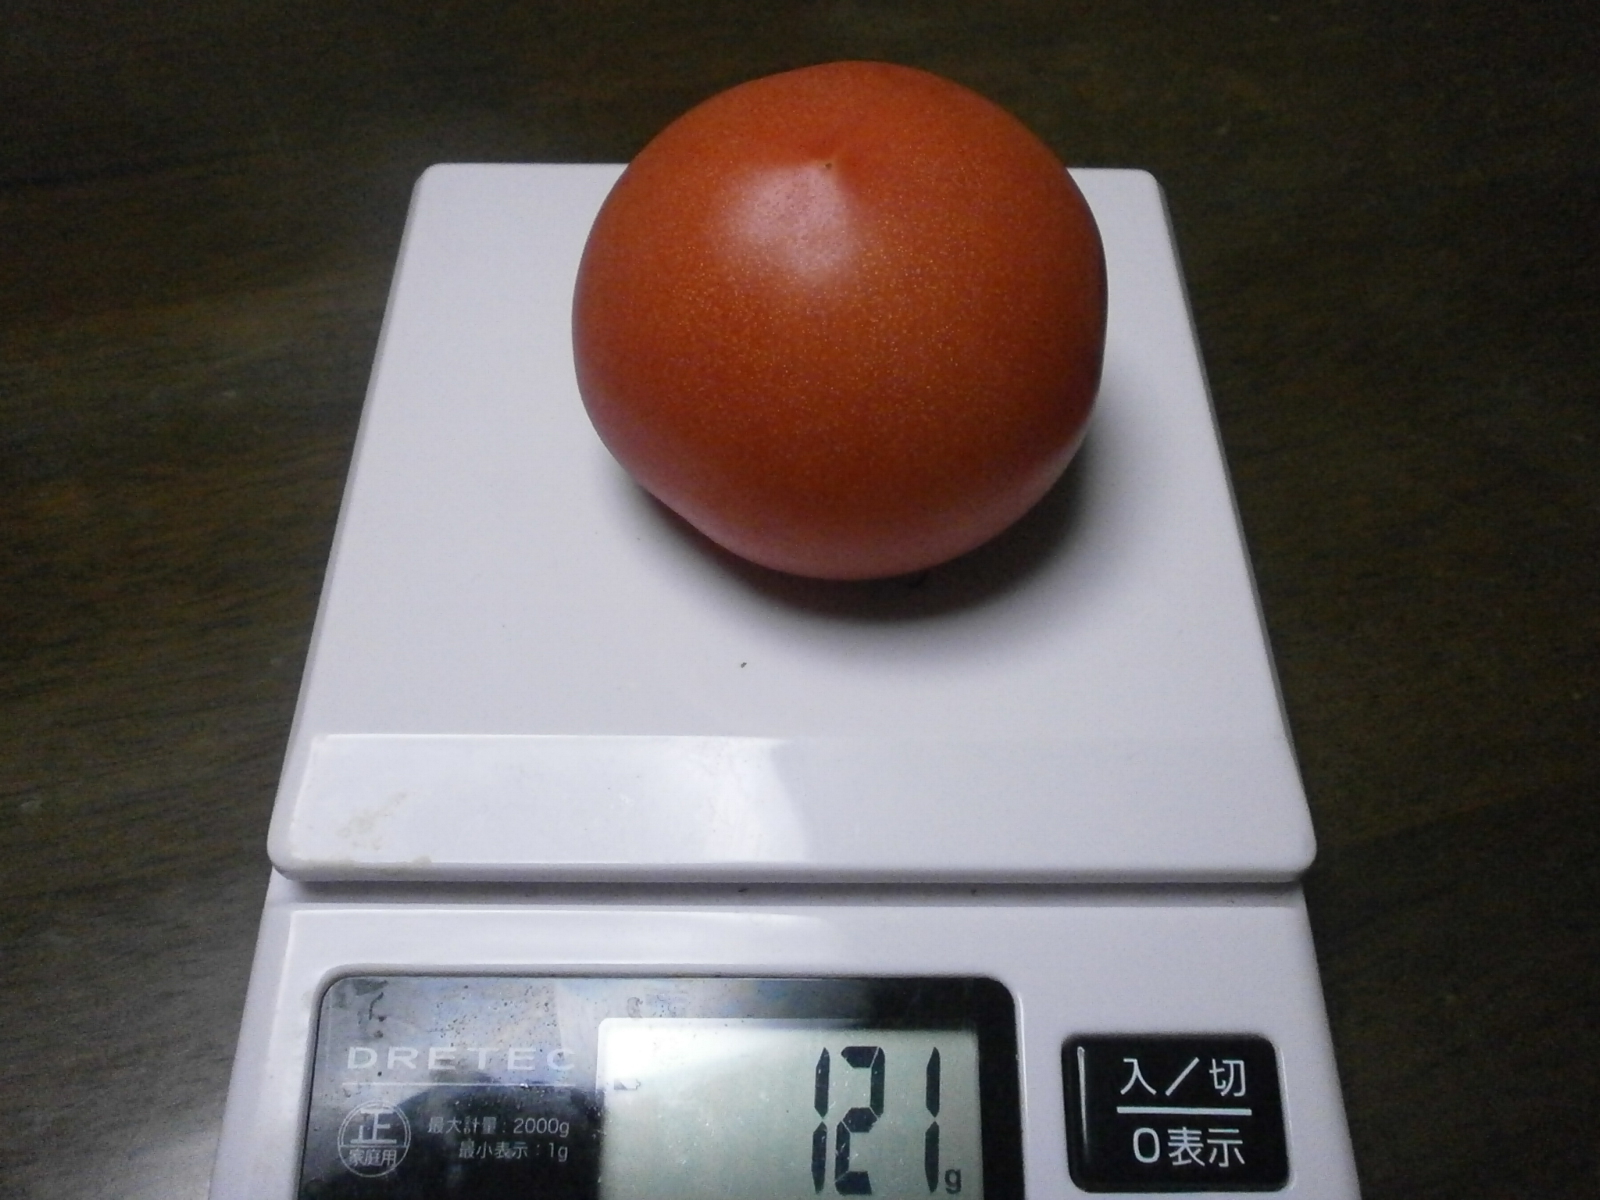 Pomodoro (141 / 136 g, 121 g/120 g g)